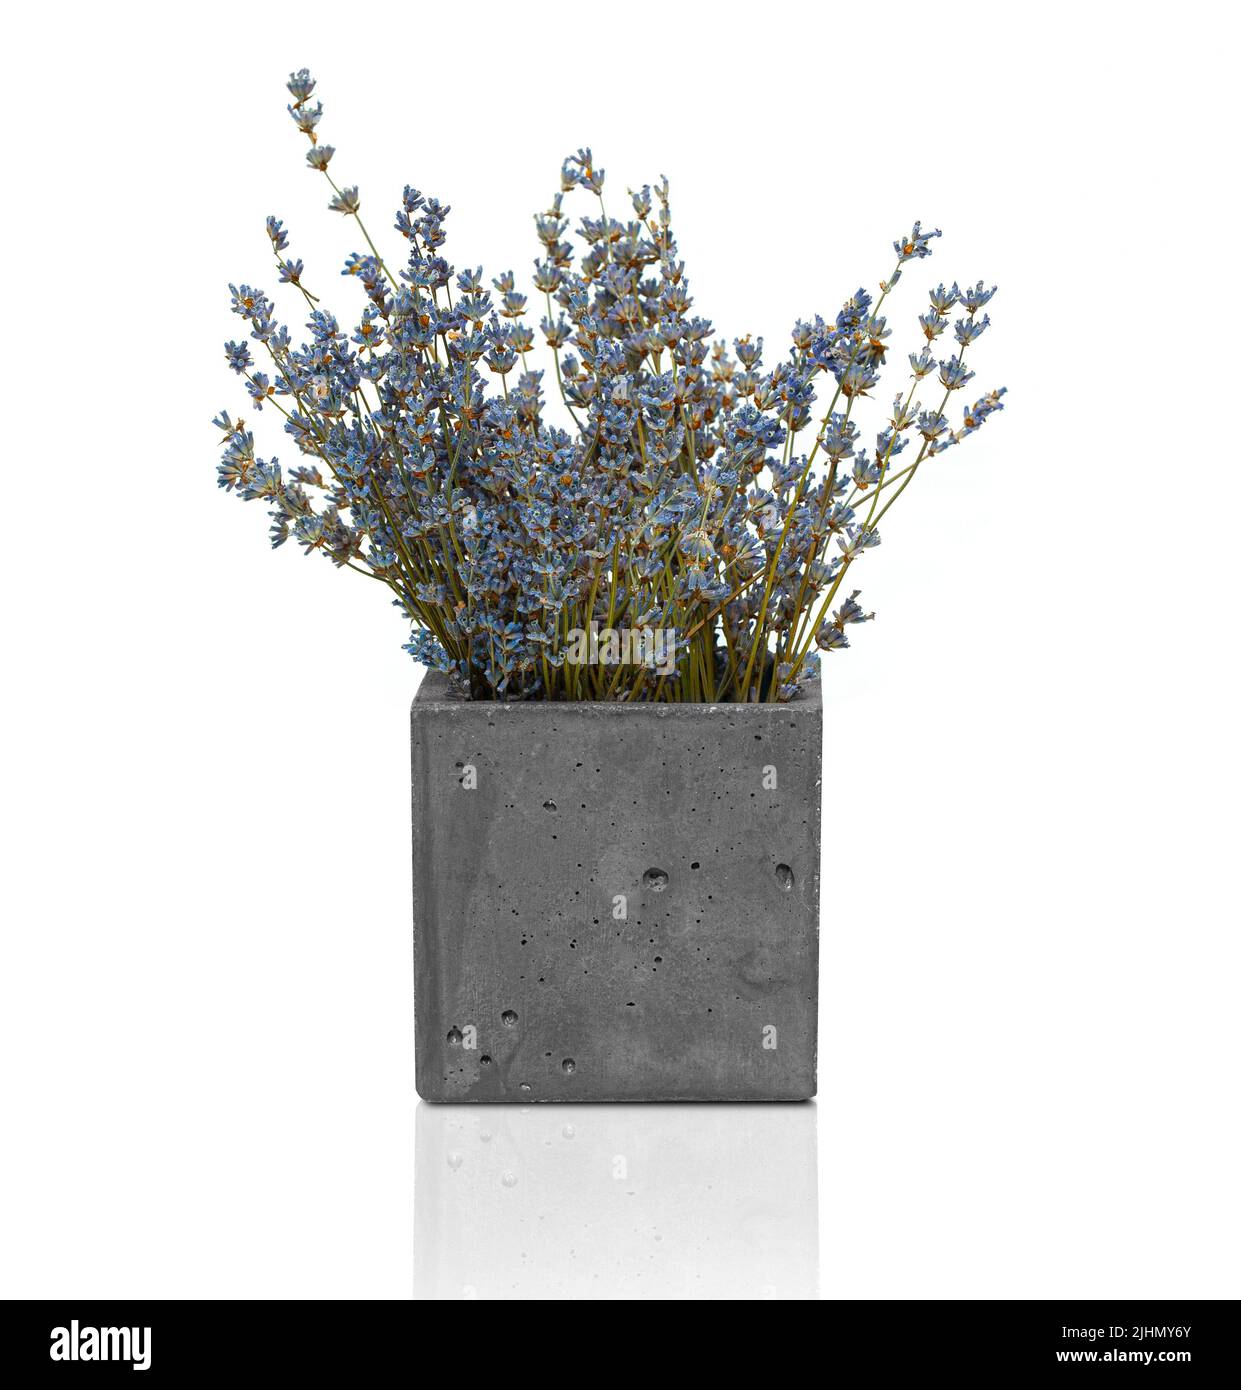 Fiori secchi di lavanda in un vaso moderno. Un elemento di decor interno. Isolato su sfondo bianco Foto Stock